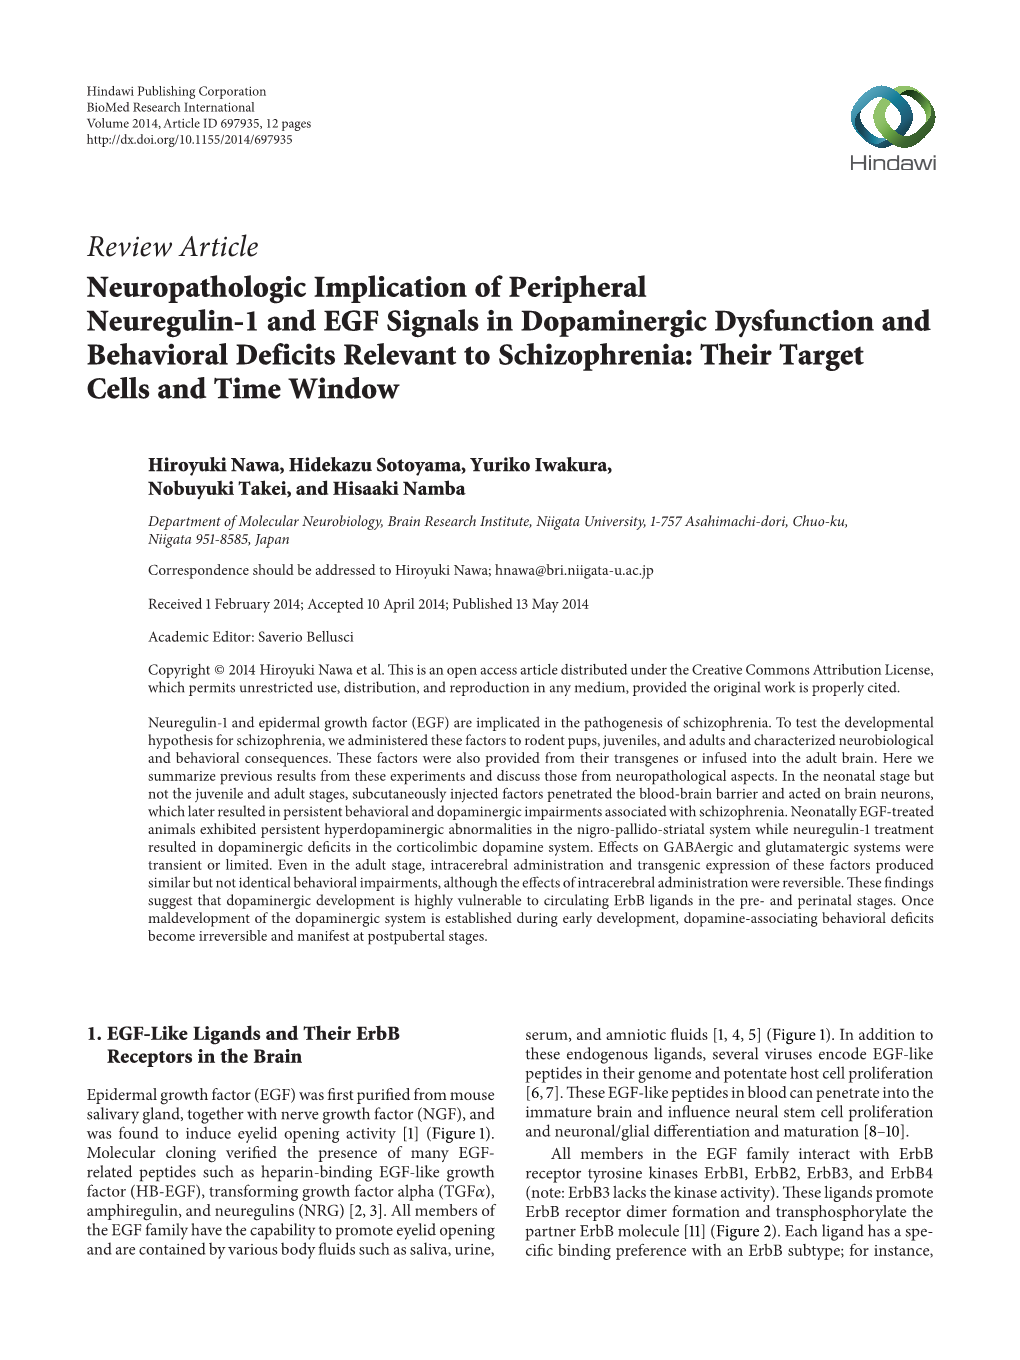 Neuropathologic Implication of Peripheral Neuregulin-1 and EGF